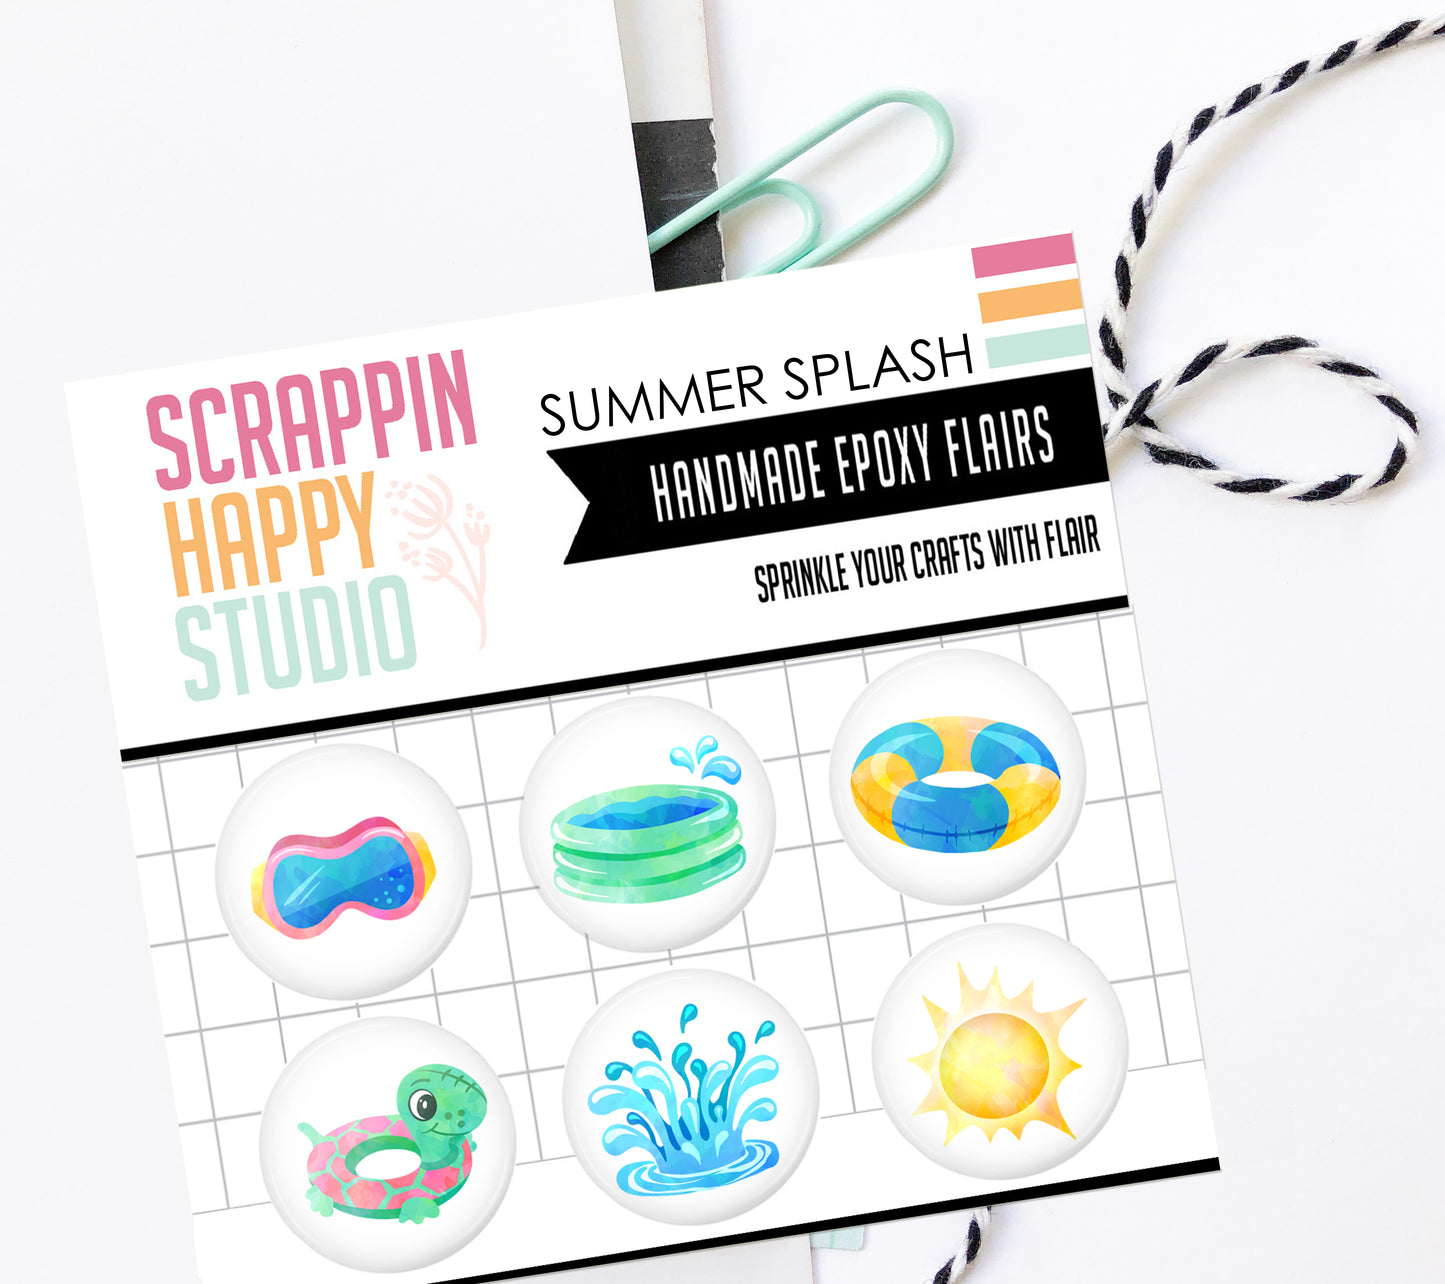 NEW Summer Splash Epoxy Flair